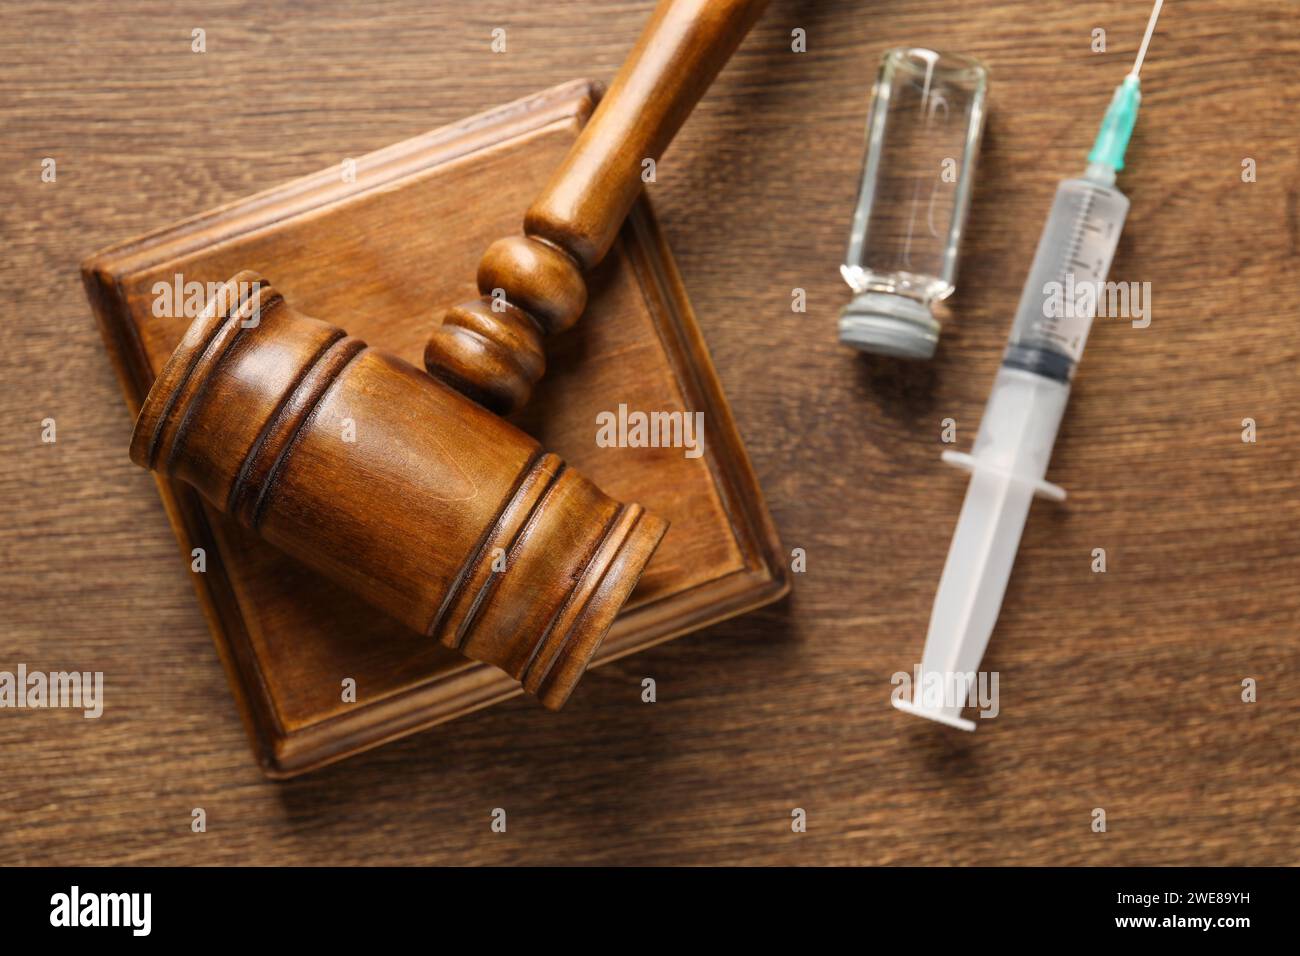 Concept de loi. Marteau, seringue et flacon en verre sur table en bois, vue de dessus Banque D'Images